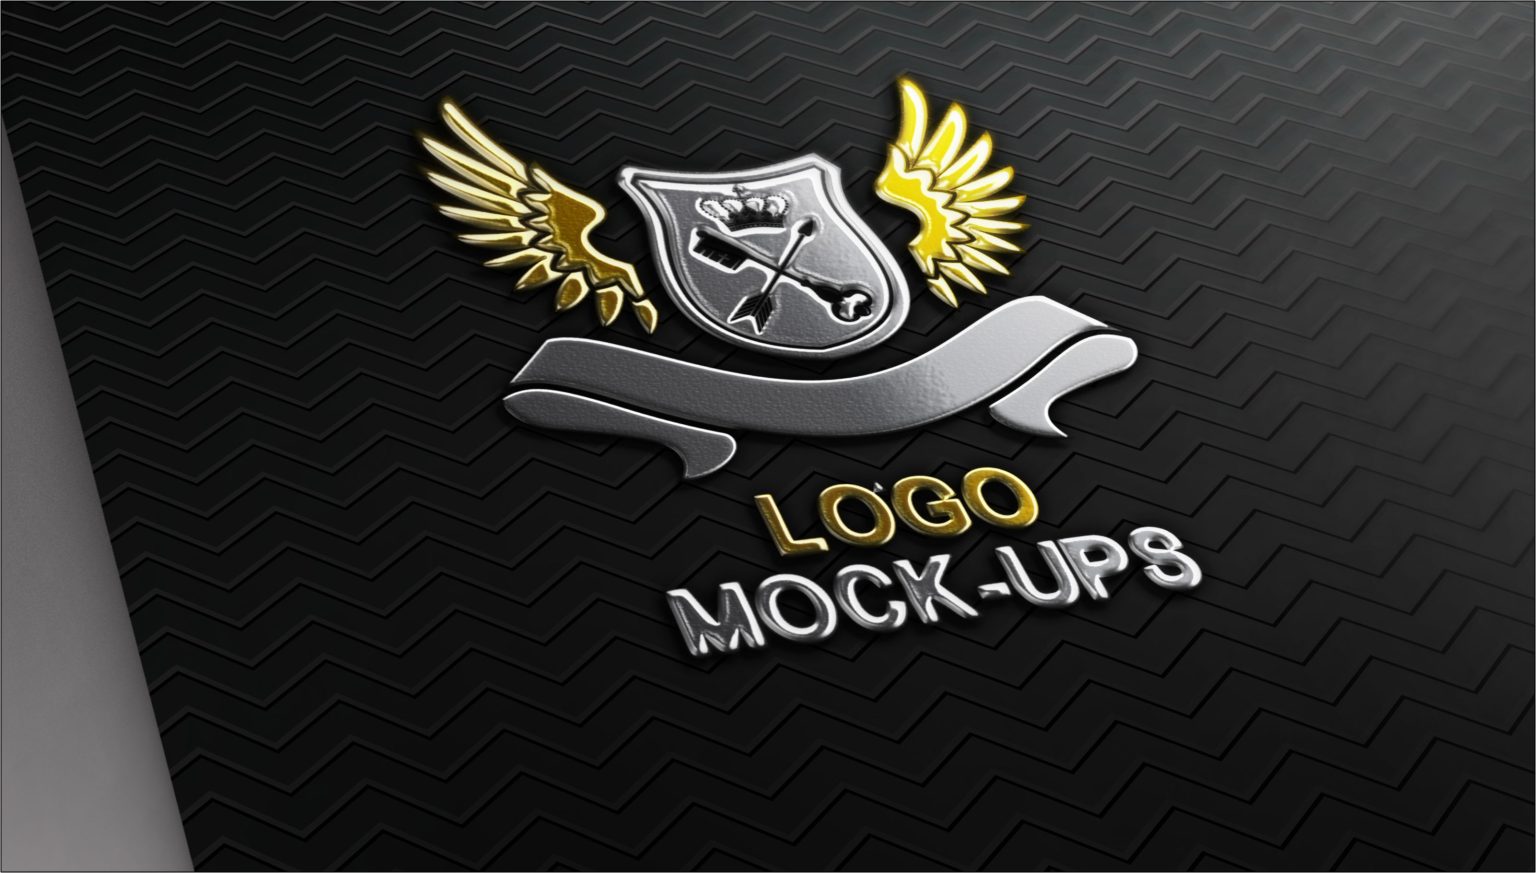 Black Striped Textured Metal Logo Mockup Free Download